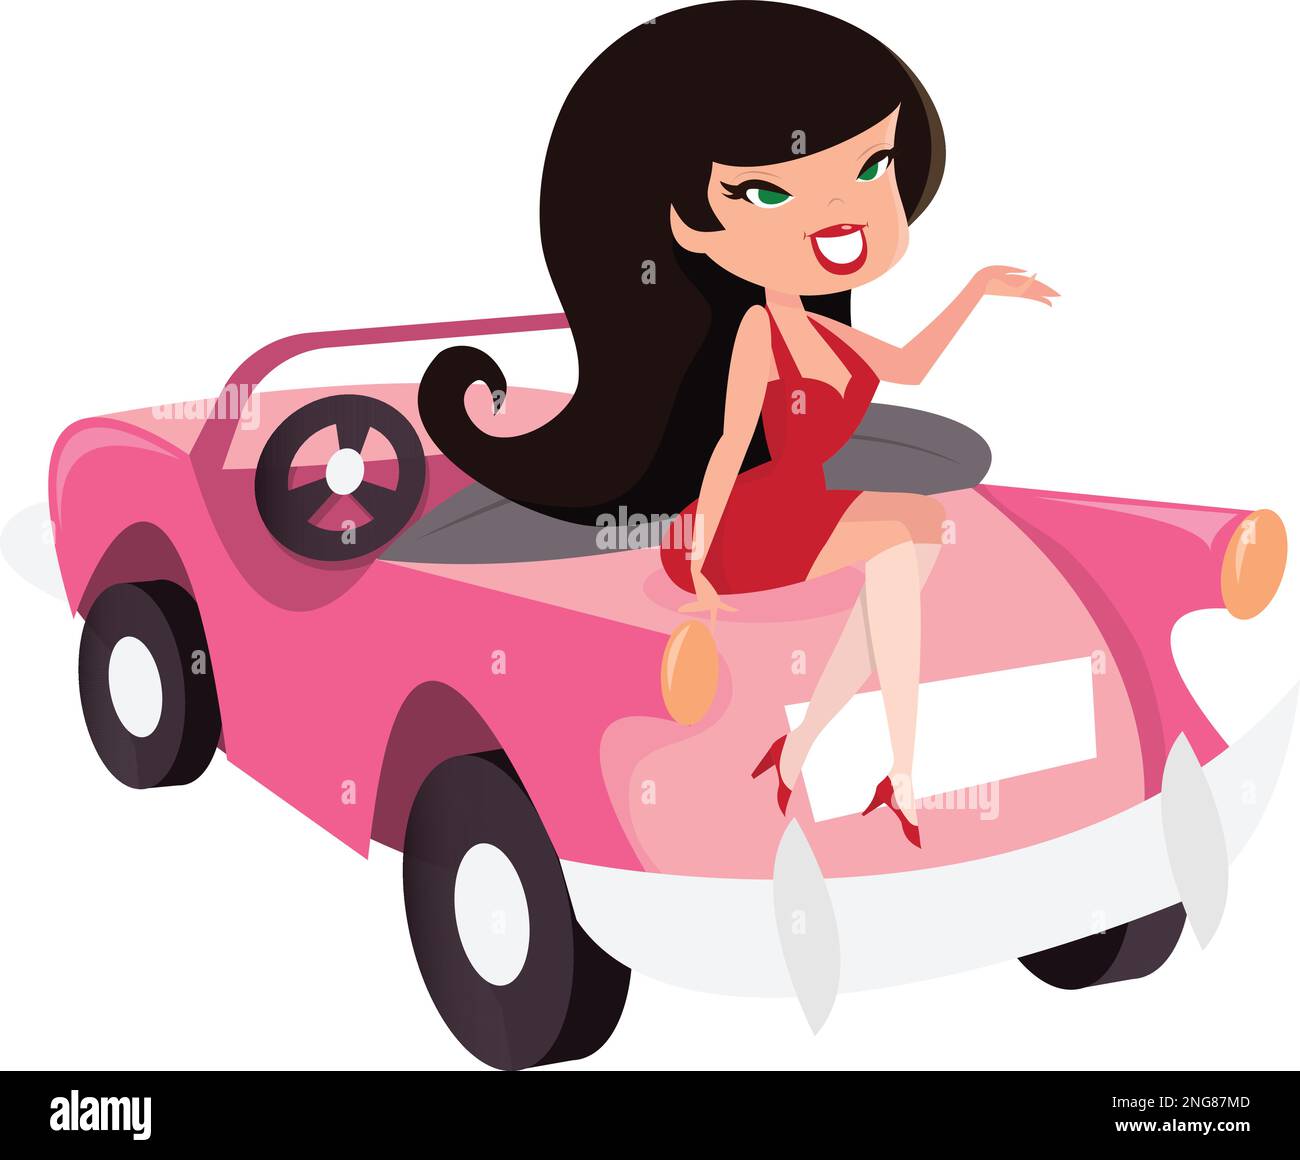 Ein Cartoon-Vektorbild eines niedlichen Cartoon-Retro-Mädchens, das auf einem pinkfarbenen Cabrio sitzt. Stock Vektor